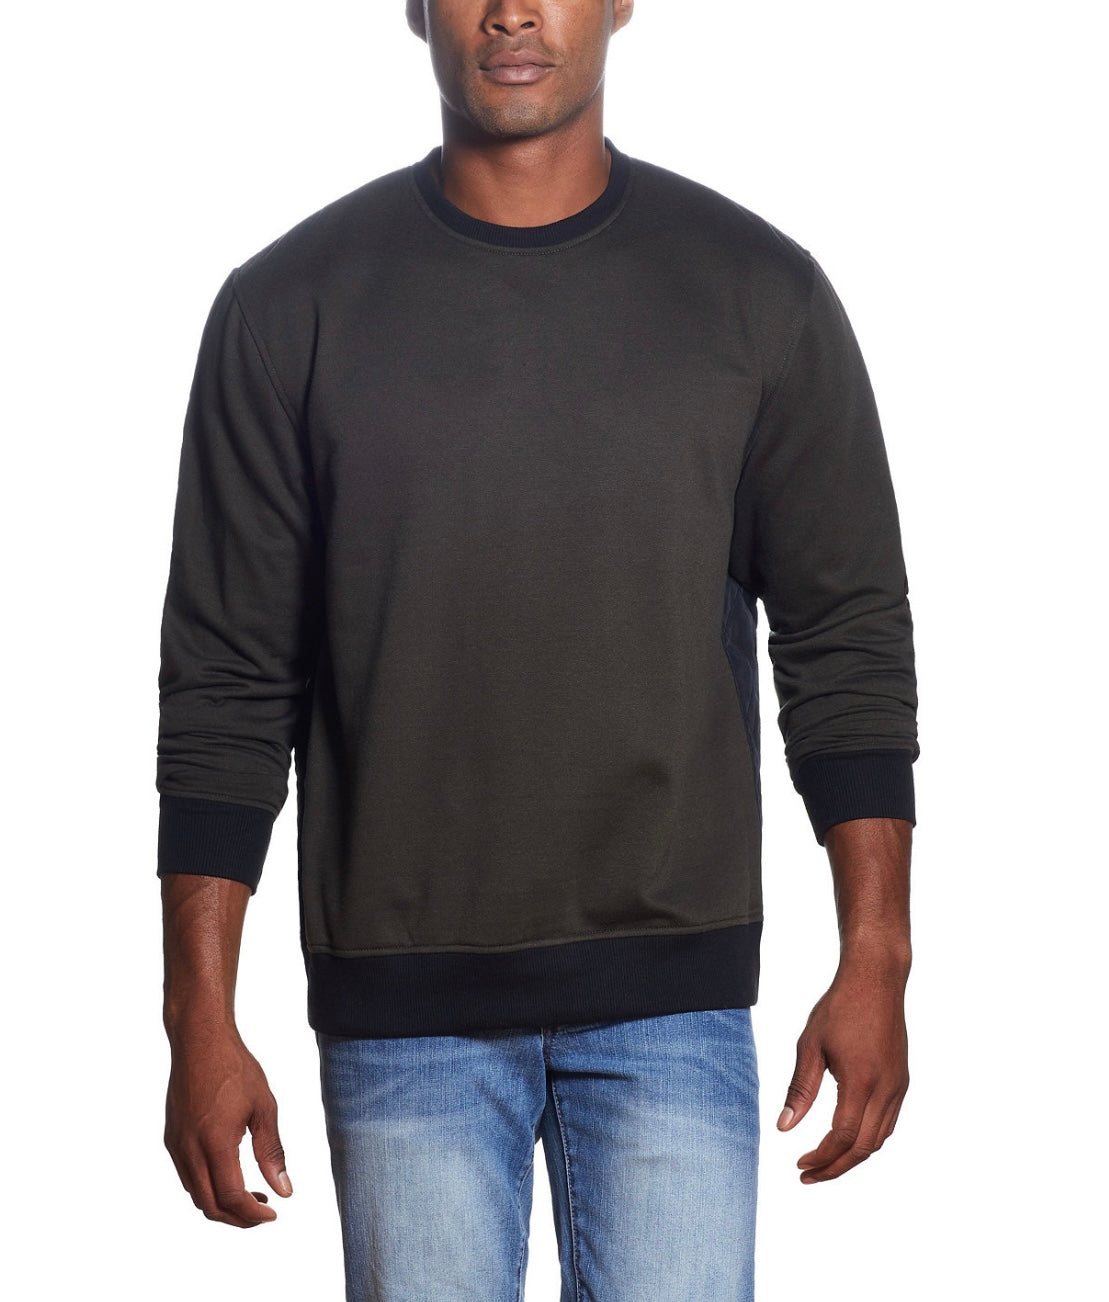 Weatherproof Vintage Men's Quilted Mix Media Sweatshirt Rosin Size L